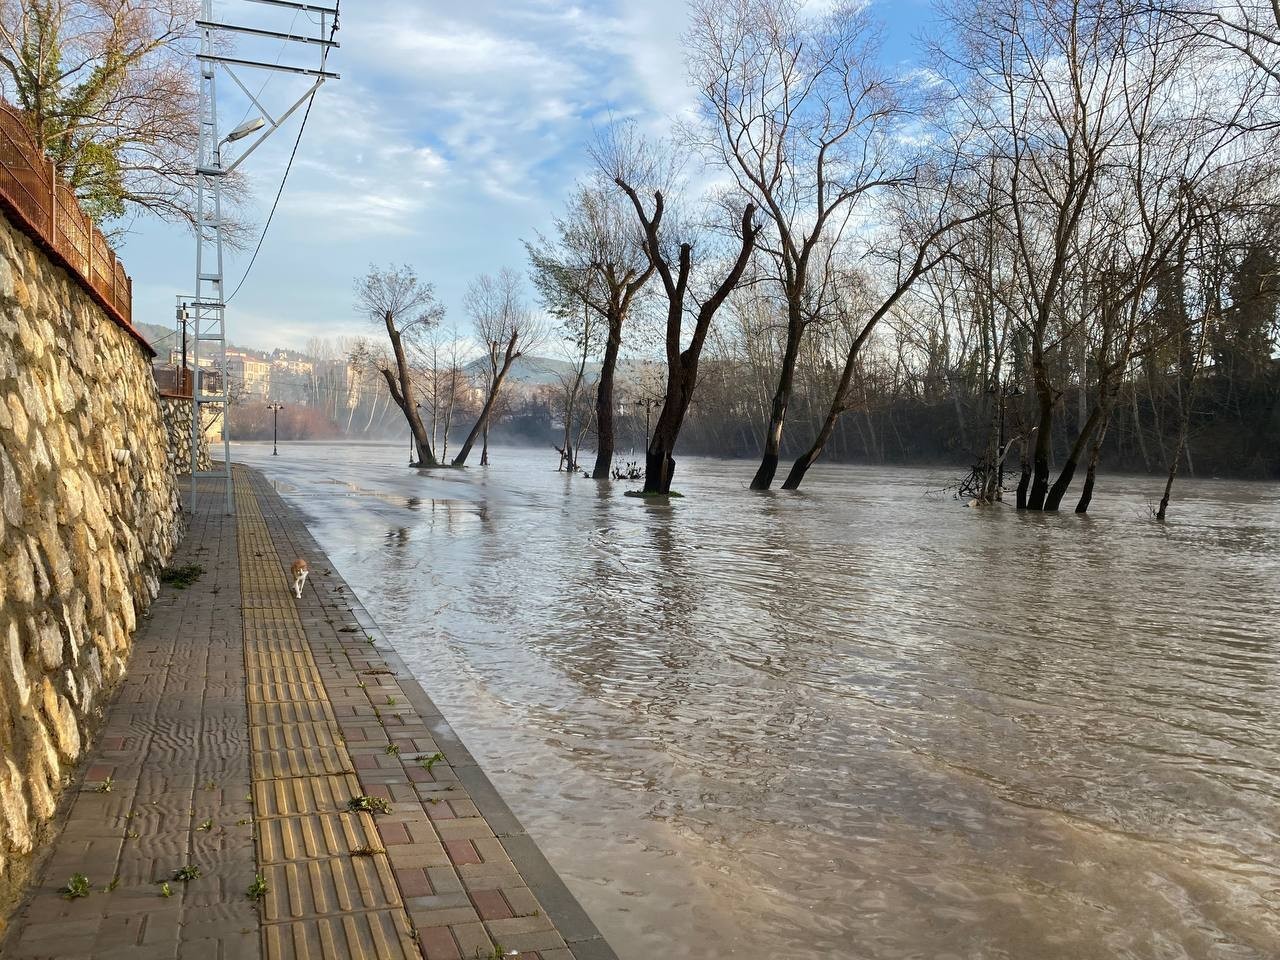 Bartın Irmağı’ndaki su seviyesi yükseldi, yürüyüş yolları ve iskeleler su altında kaldı #bartin